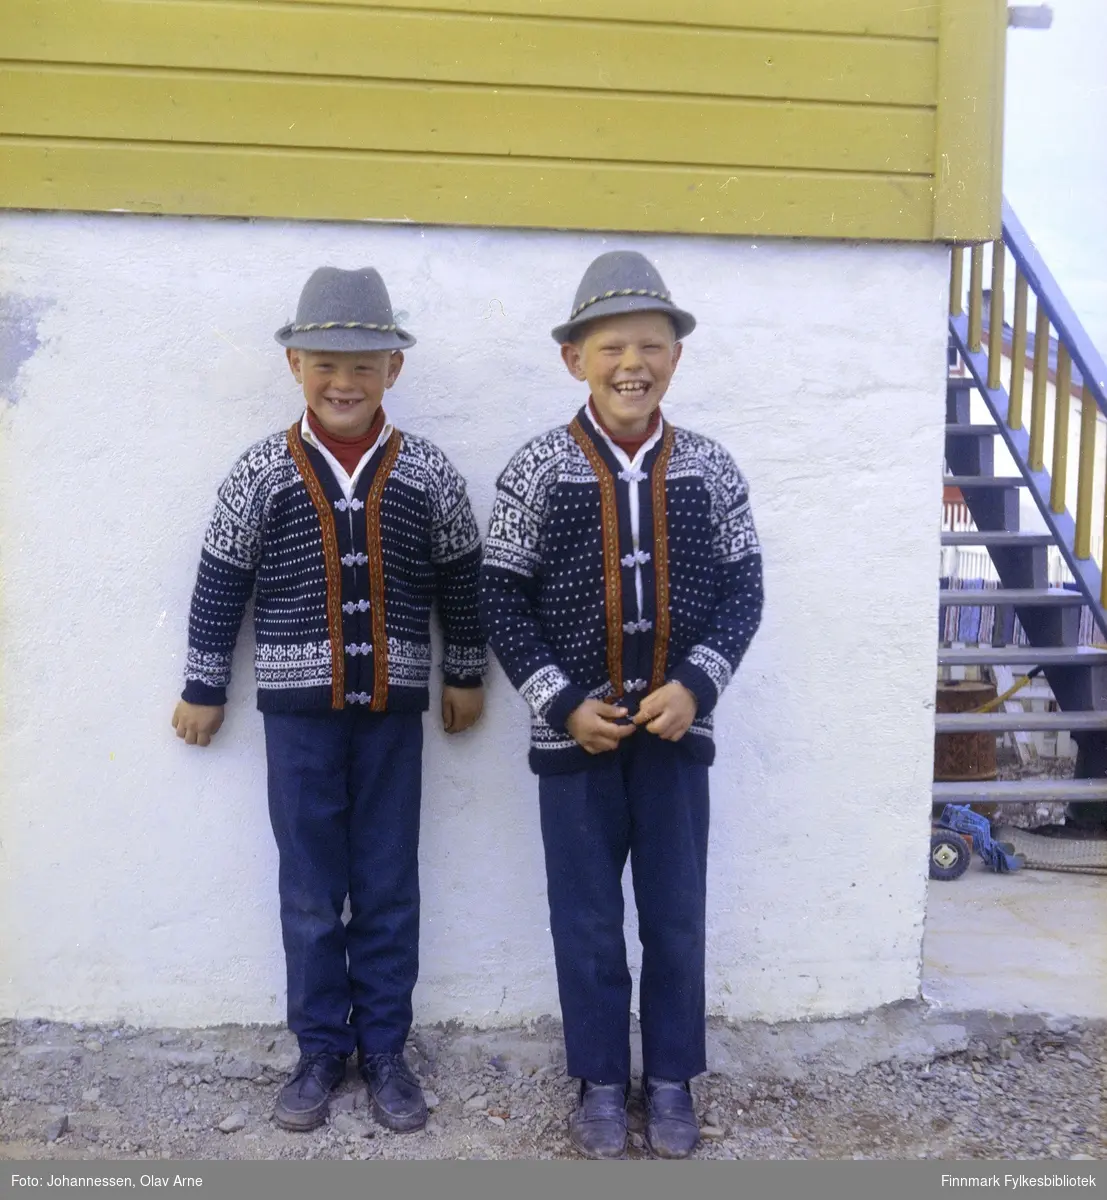 Foto av to ukjente smilende gutter kledd i matchende klær

Foto trolig tatt på 1960-tallet